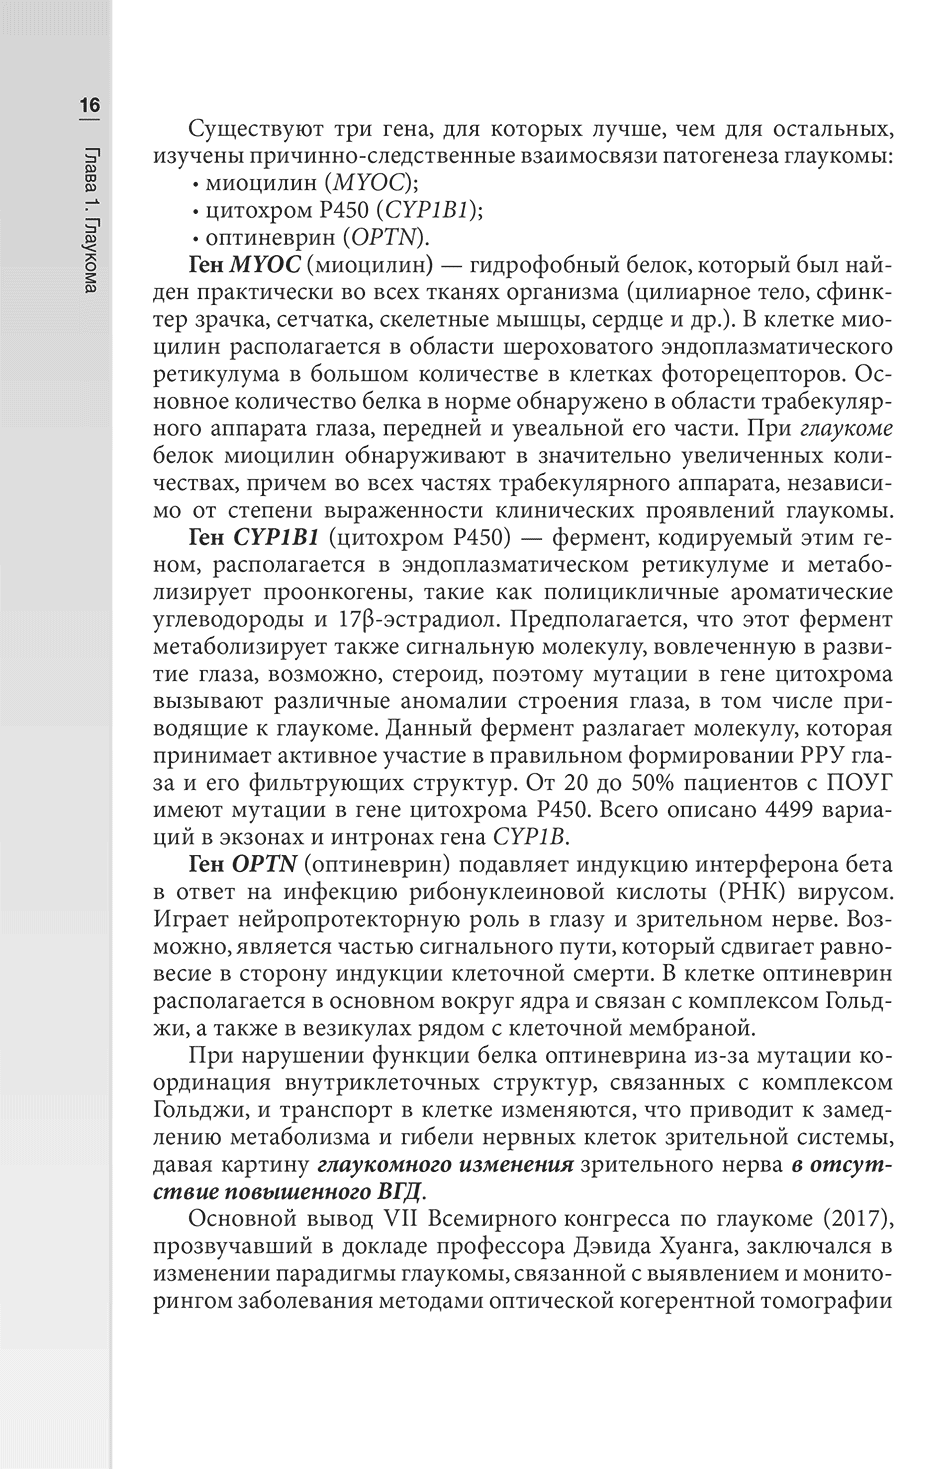 Пример страницы из книги "Гериатрическая офтальмология: руководство для врачей" - Лаптева Е. С.